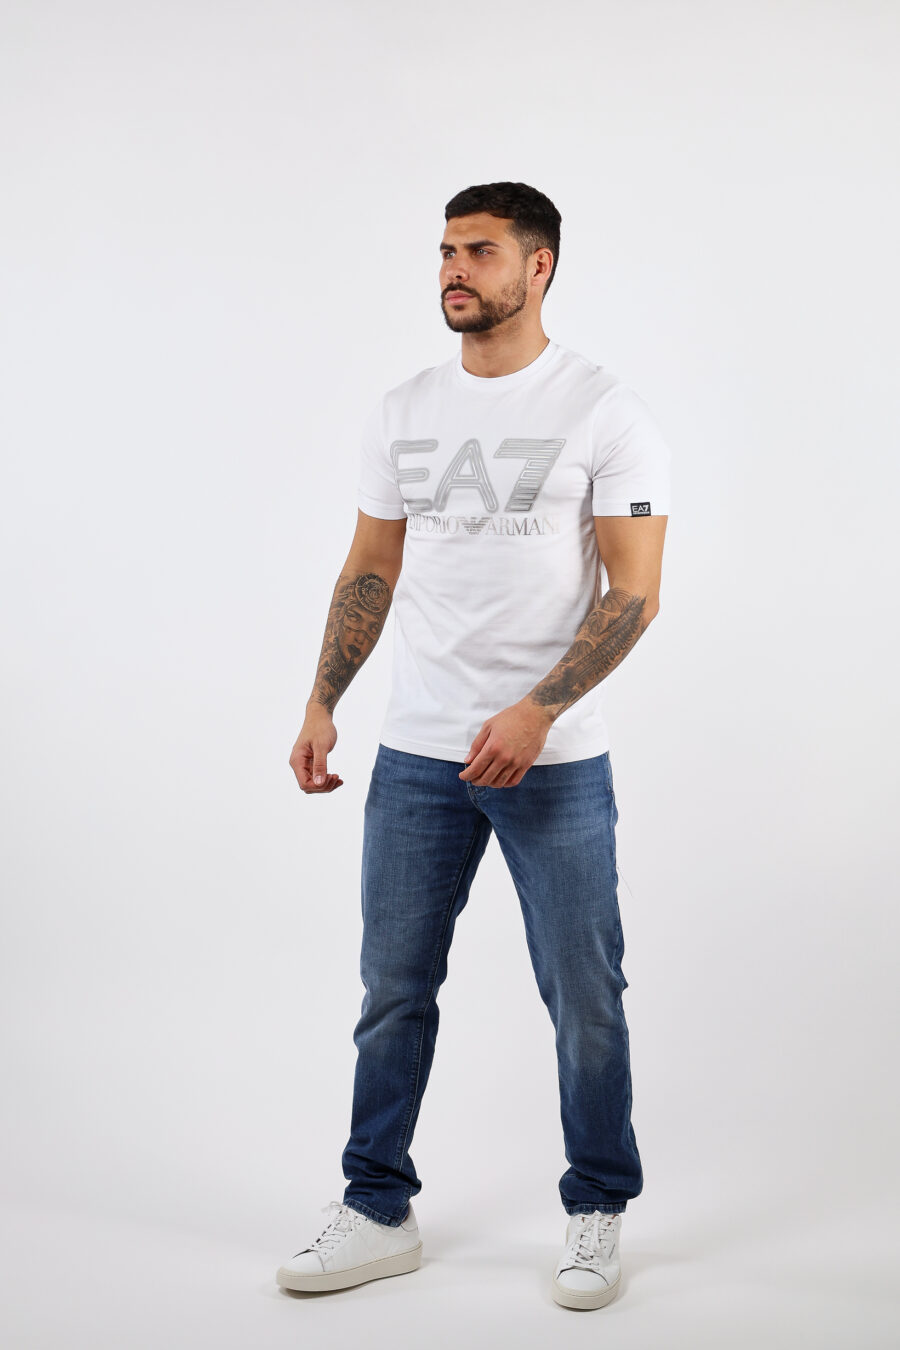 T-shirt blanc avec maxilogo "lux identity" argenté - BLS Fashion 21